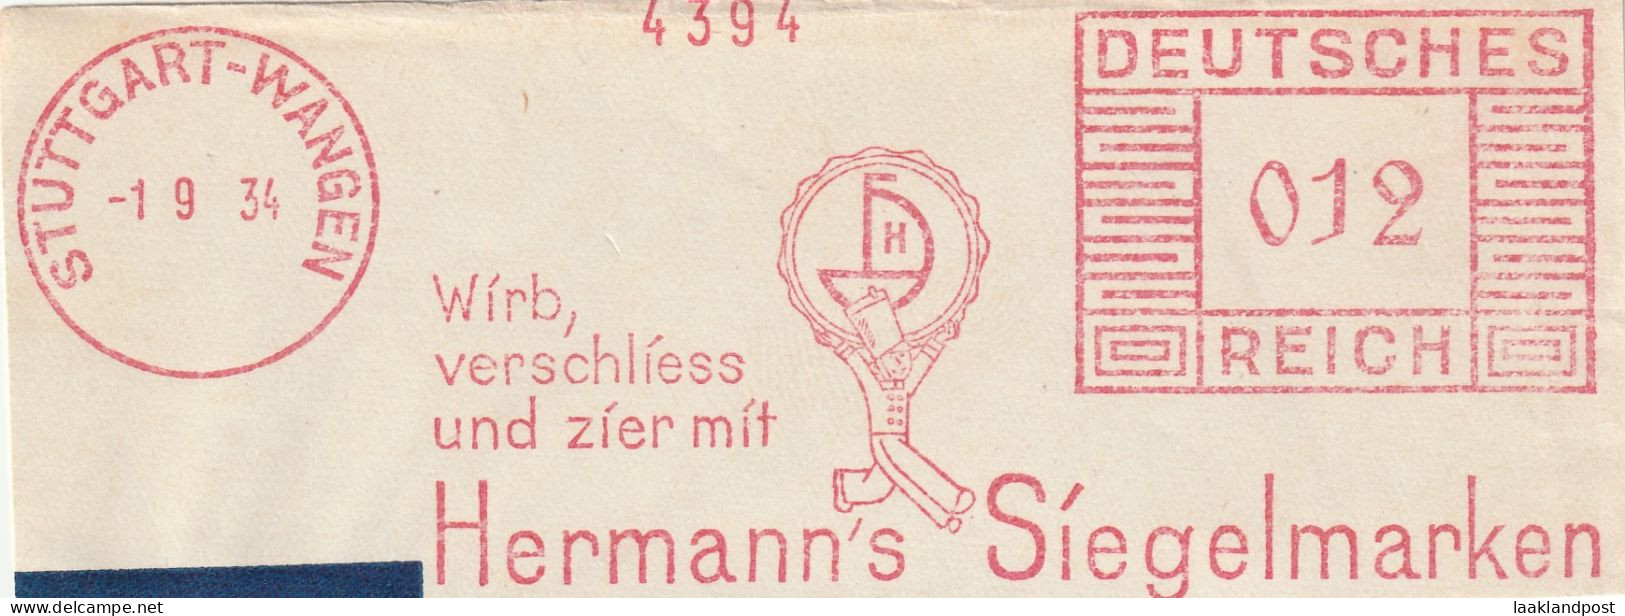 Deutsche Reichpost Nice Cut Meter Freistempel  Wirb, Verschliess Und Zier Miot Hermann's Siegelmarken, Stuttgart-Wangen - Macchine Per Obliterare